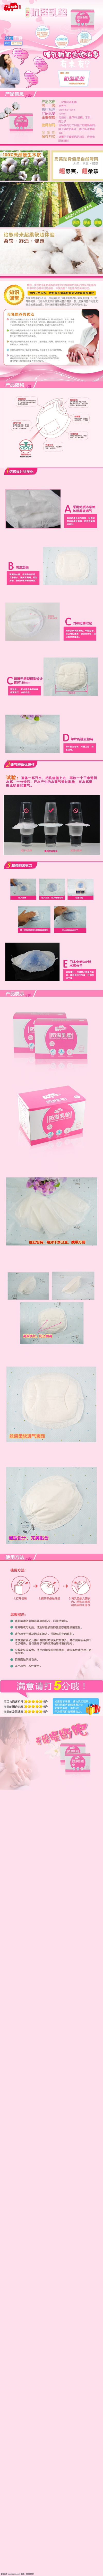 防 溢 乳 垫 宝贝 描述 页 描述页 母婴 淘宝 防溢乳垫 原创设计 原创淘宝设计